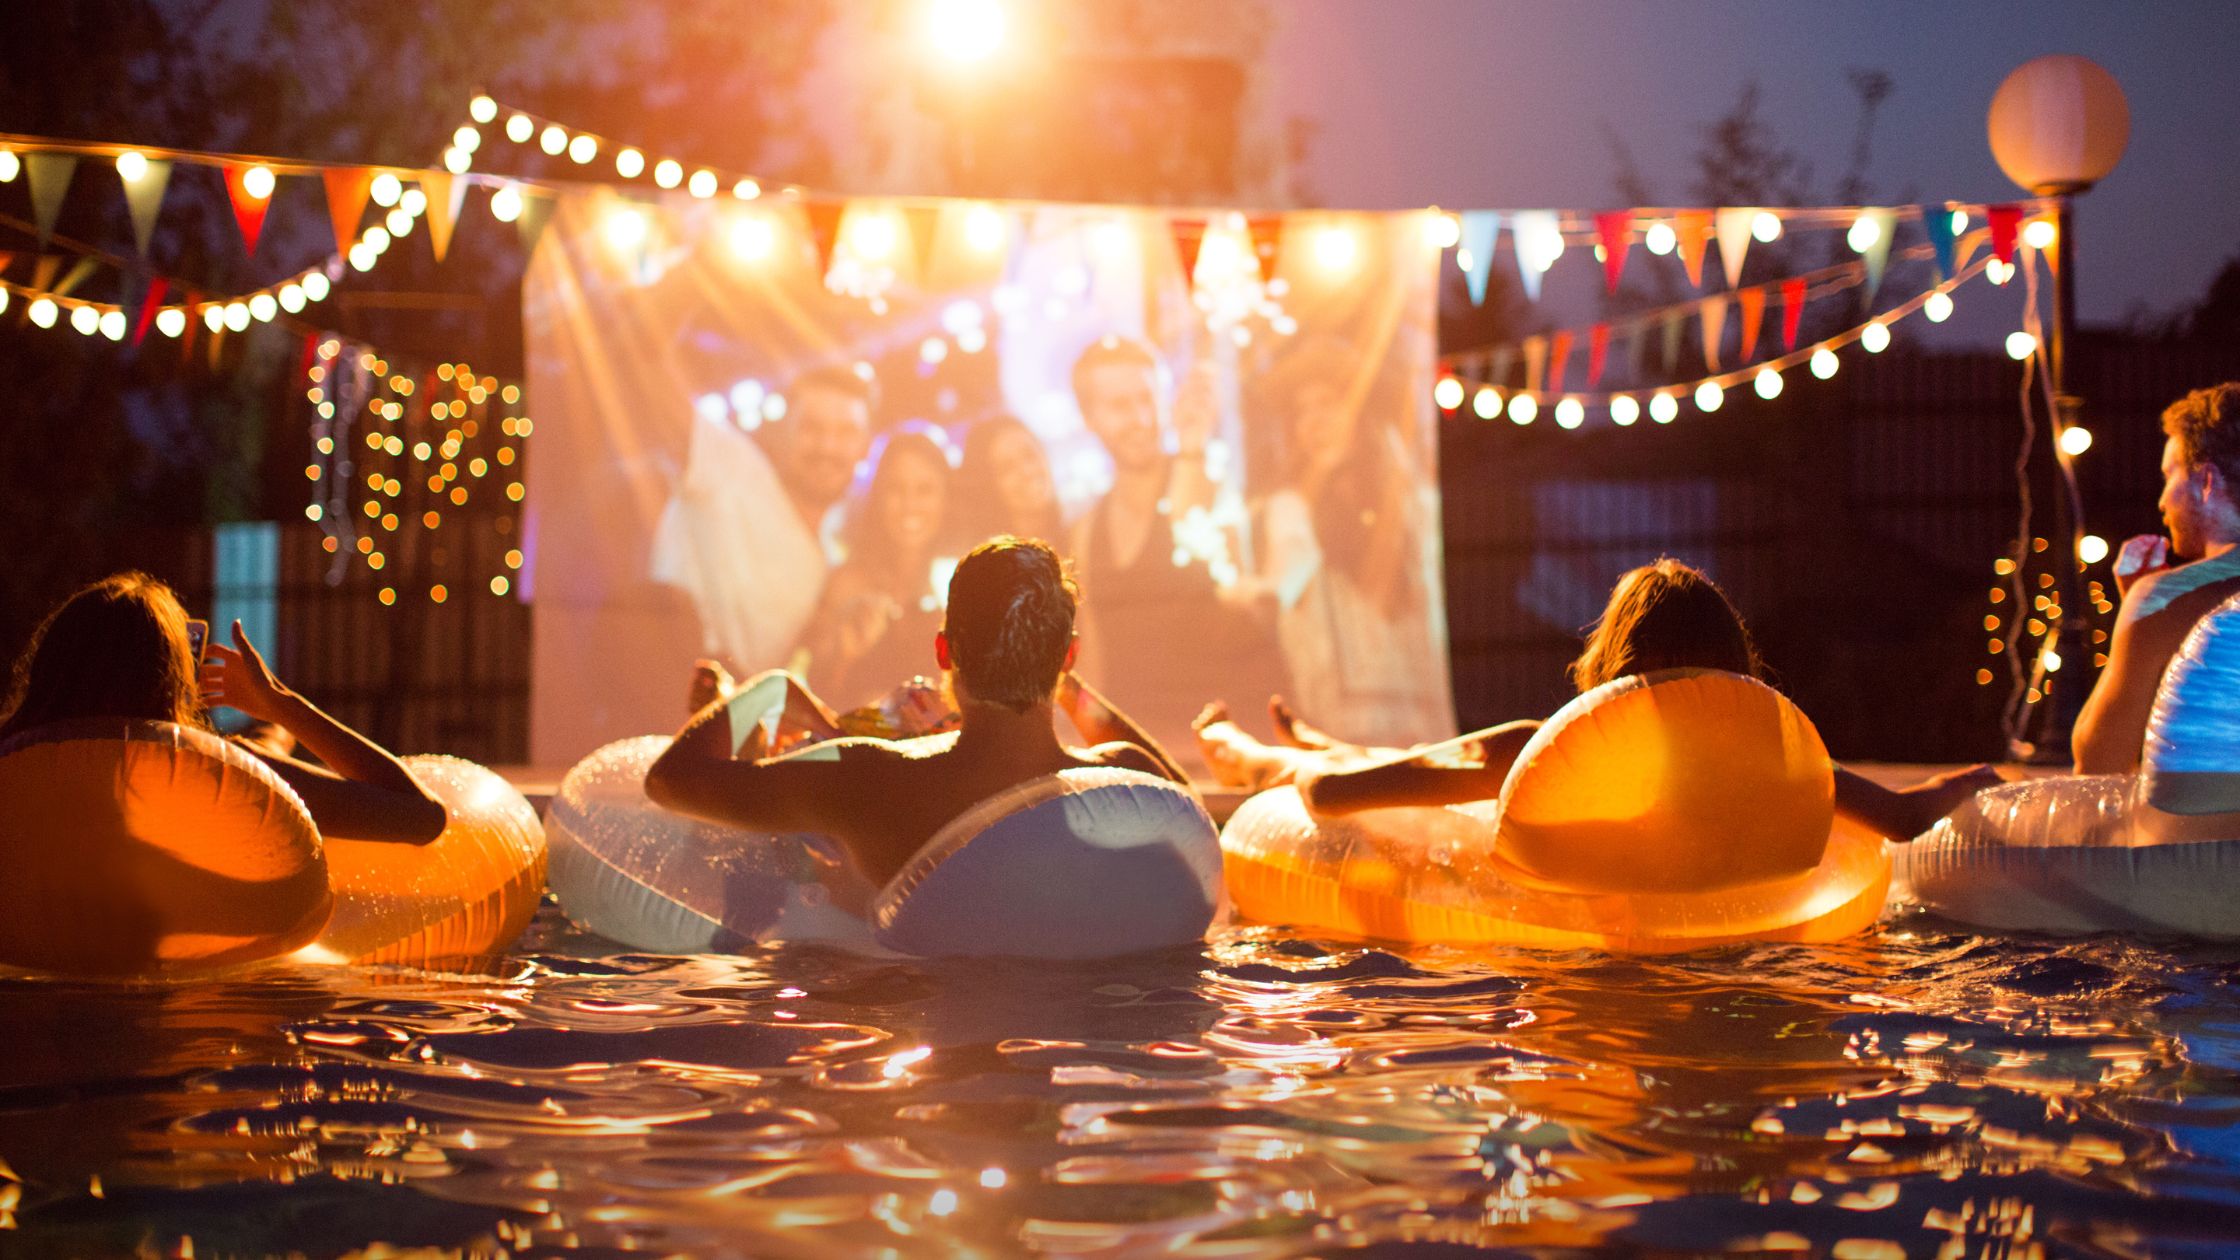 organizar un cine de verano en una fiesta en la piscina (pool party)